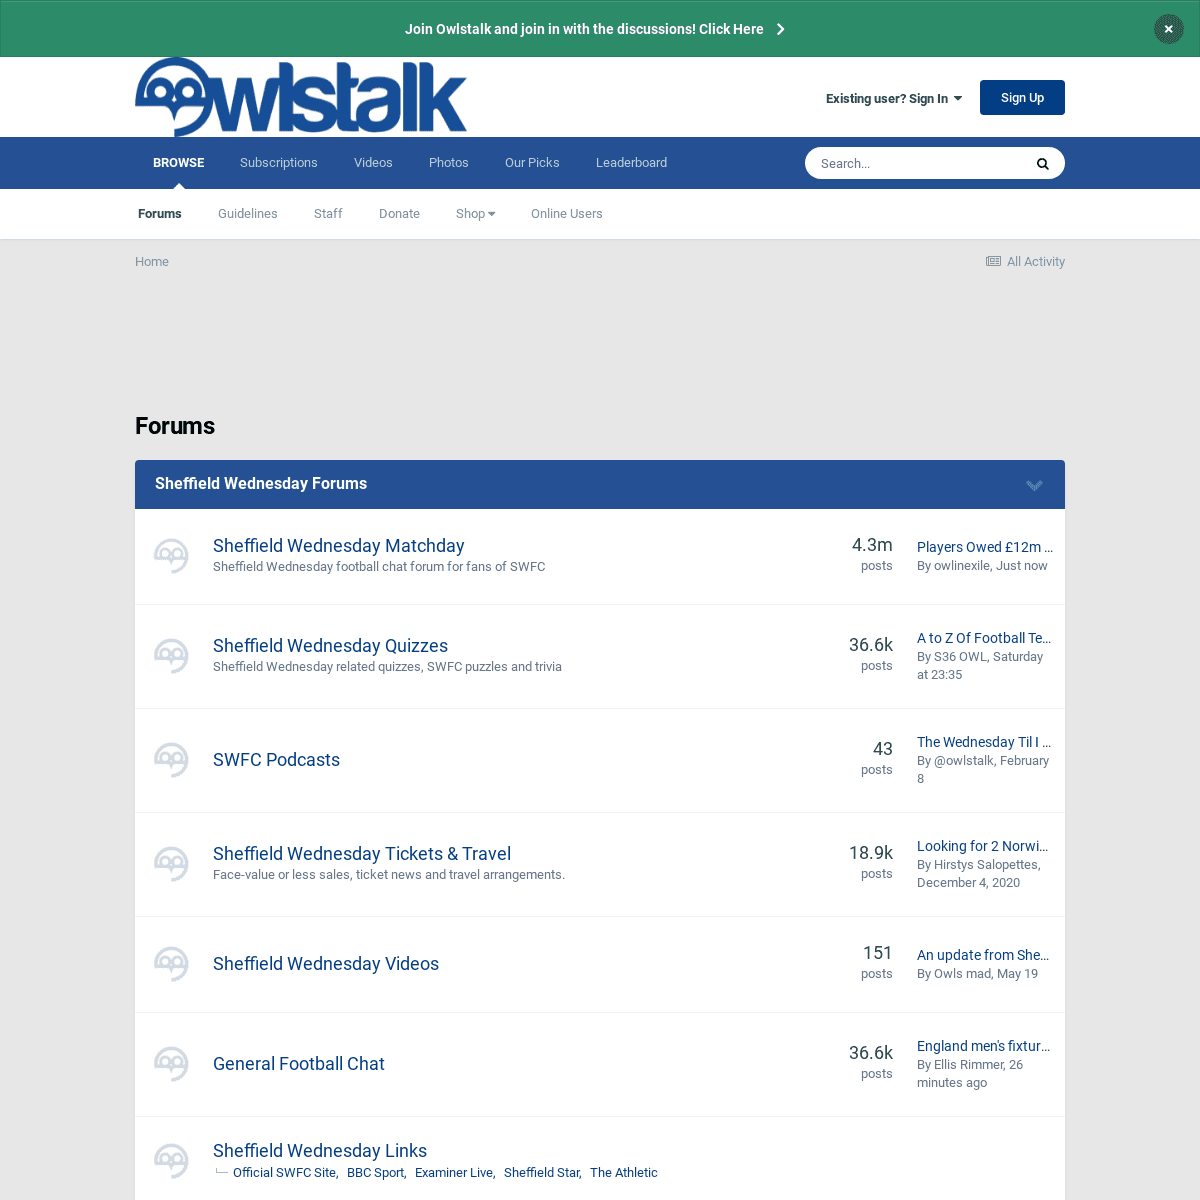 A complete backup of https://owlstalk.co.uk